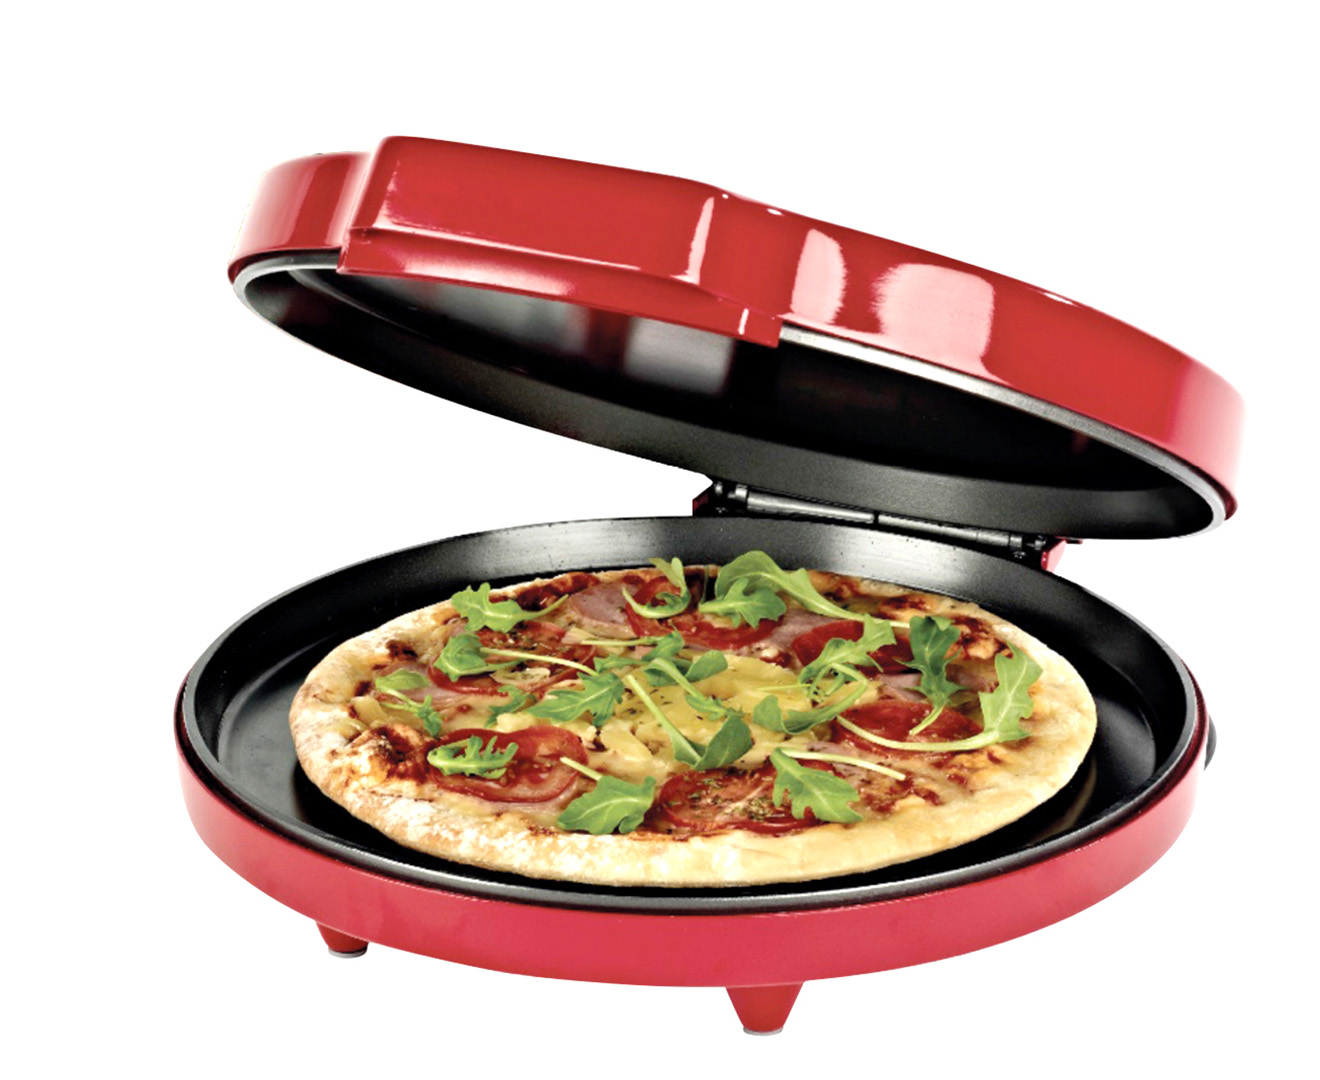 форма для приготовления пиццы в духовке фото 88